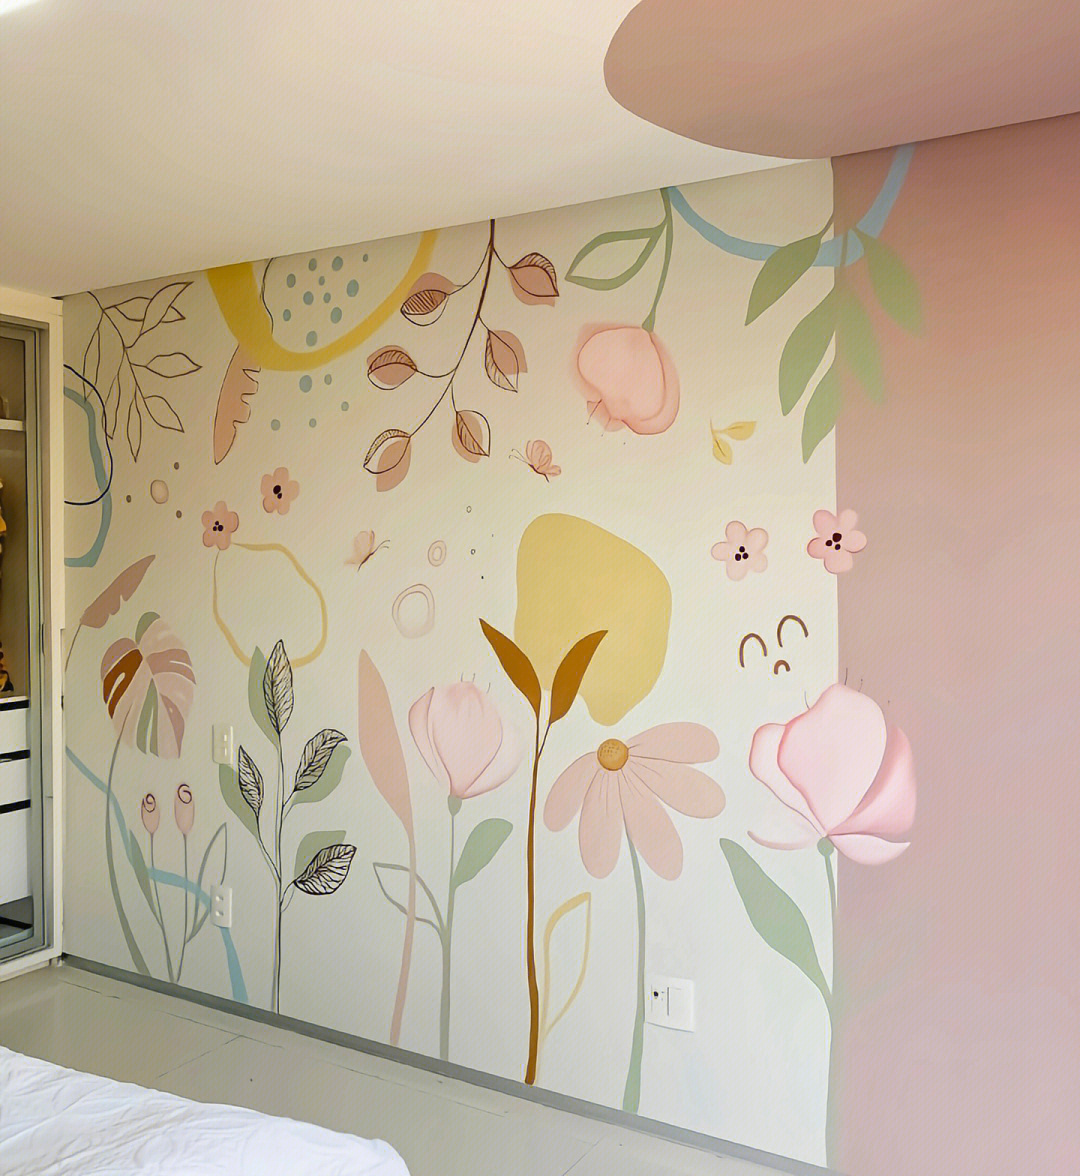 卧室手绘壁画作品,让你的卧室既温馨又舒适,华瀚墙绘分享专业知识,让